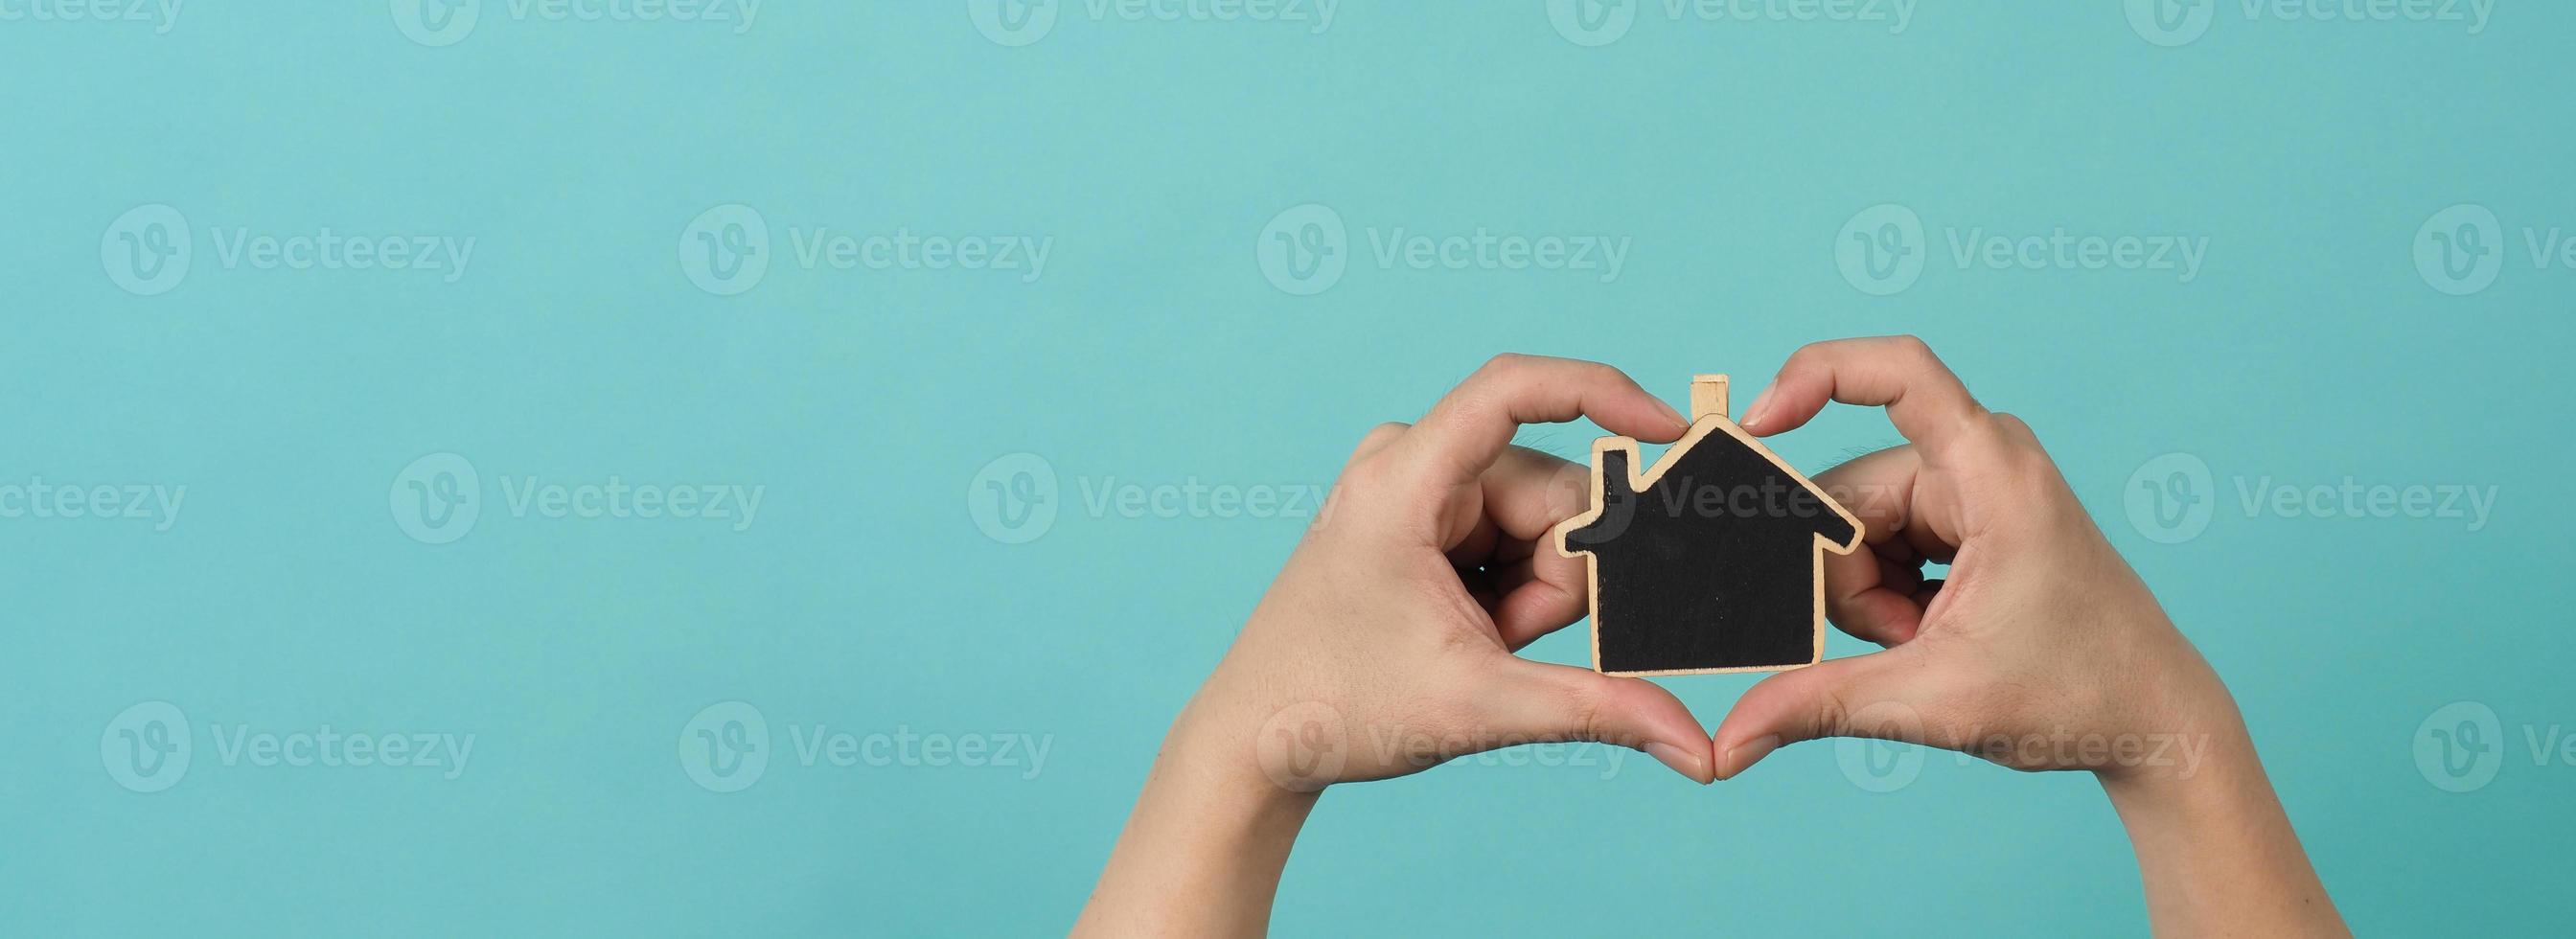 la petite maison en bois entre les mains représente des concepts tels que les soins à domicile la famille l'amour l'immobilier le logement l'assurance et l'hypothèque. mains tenant une petite maison modèle isolée sur fond de studio vert bleu. photo